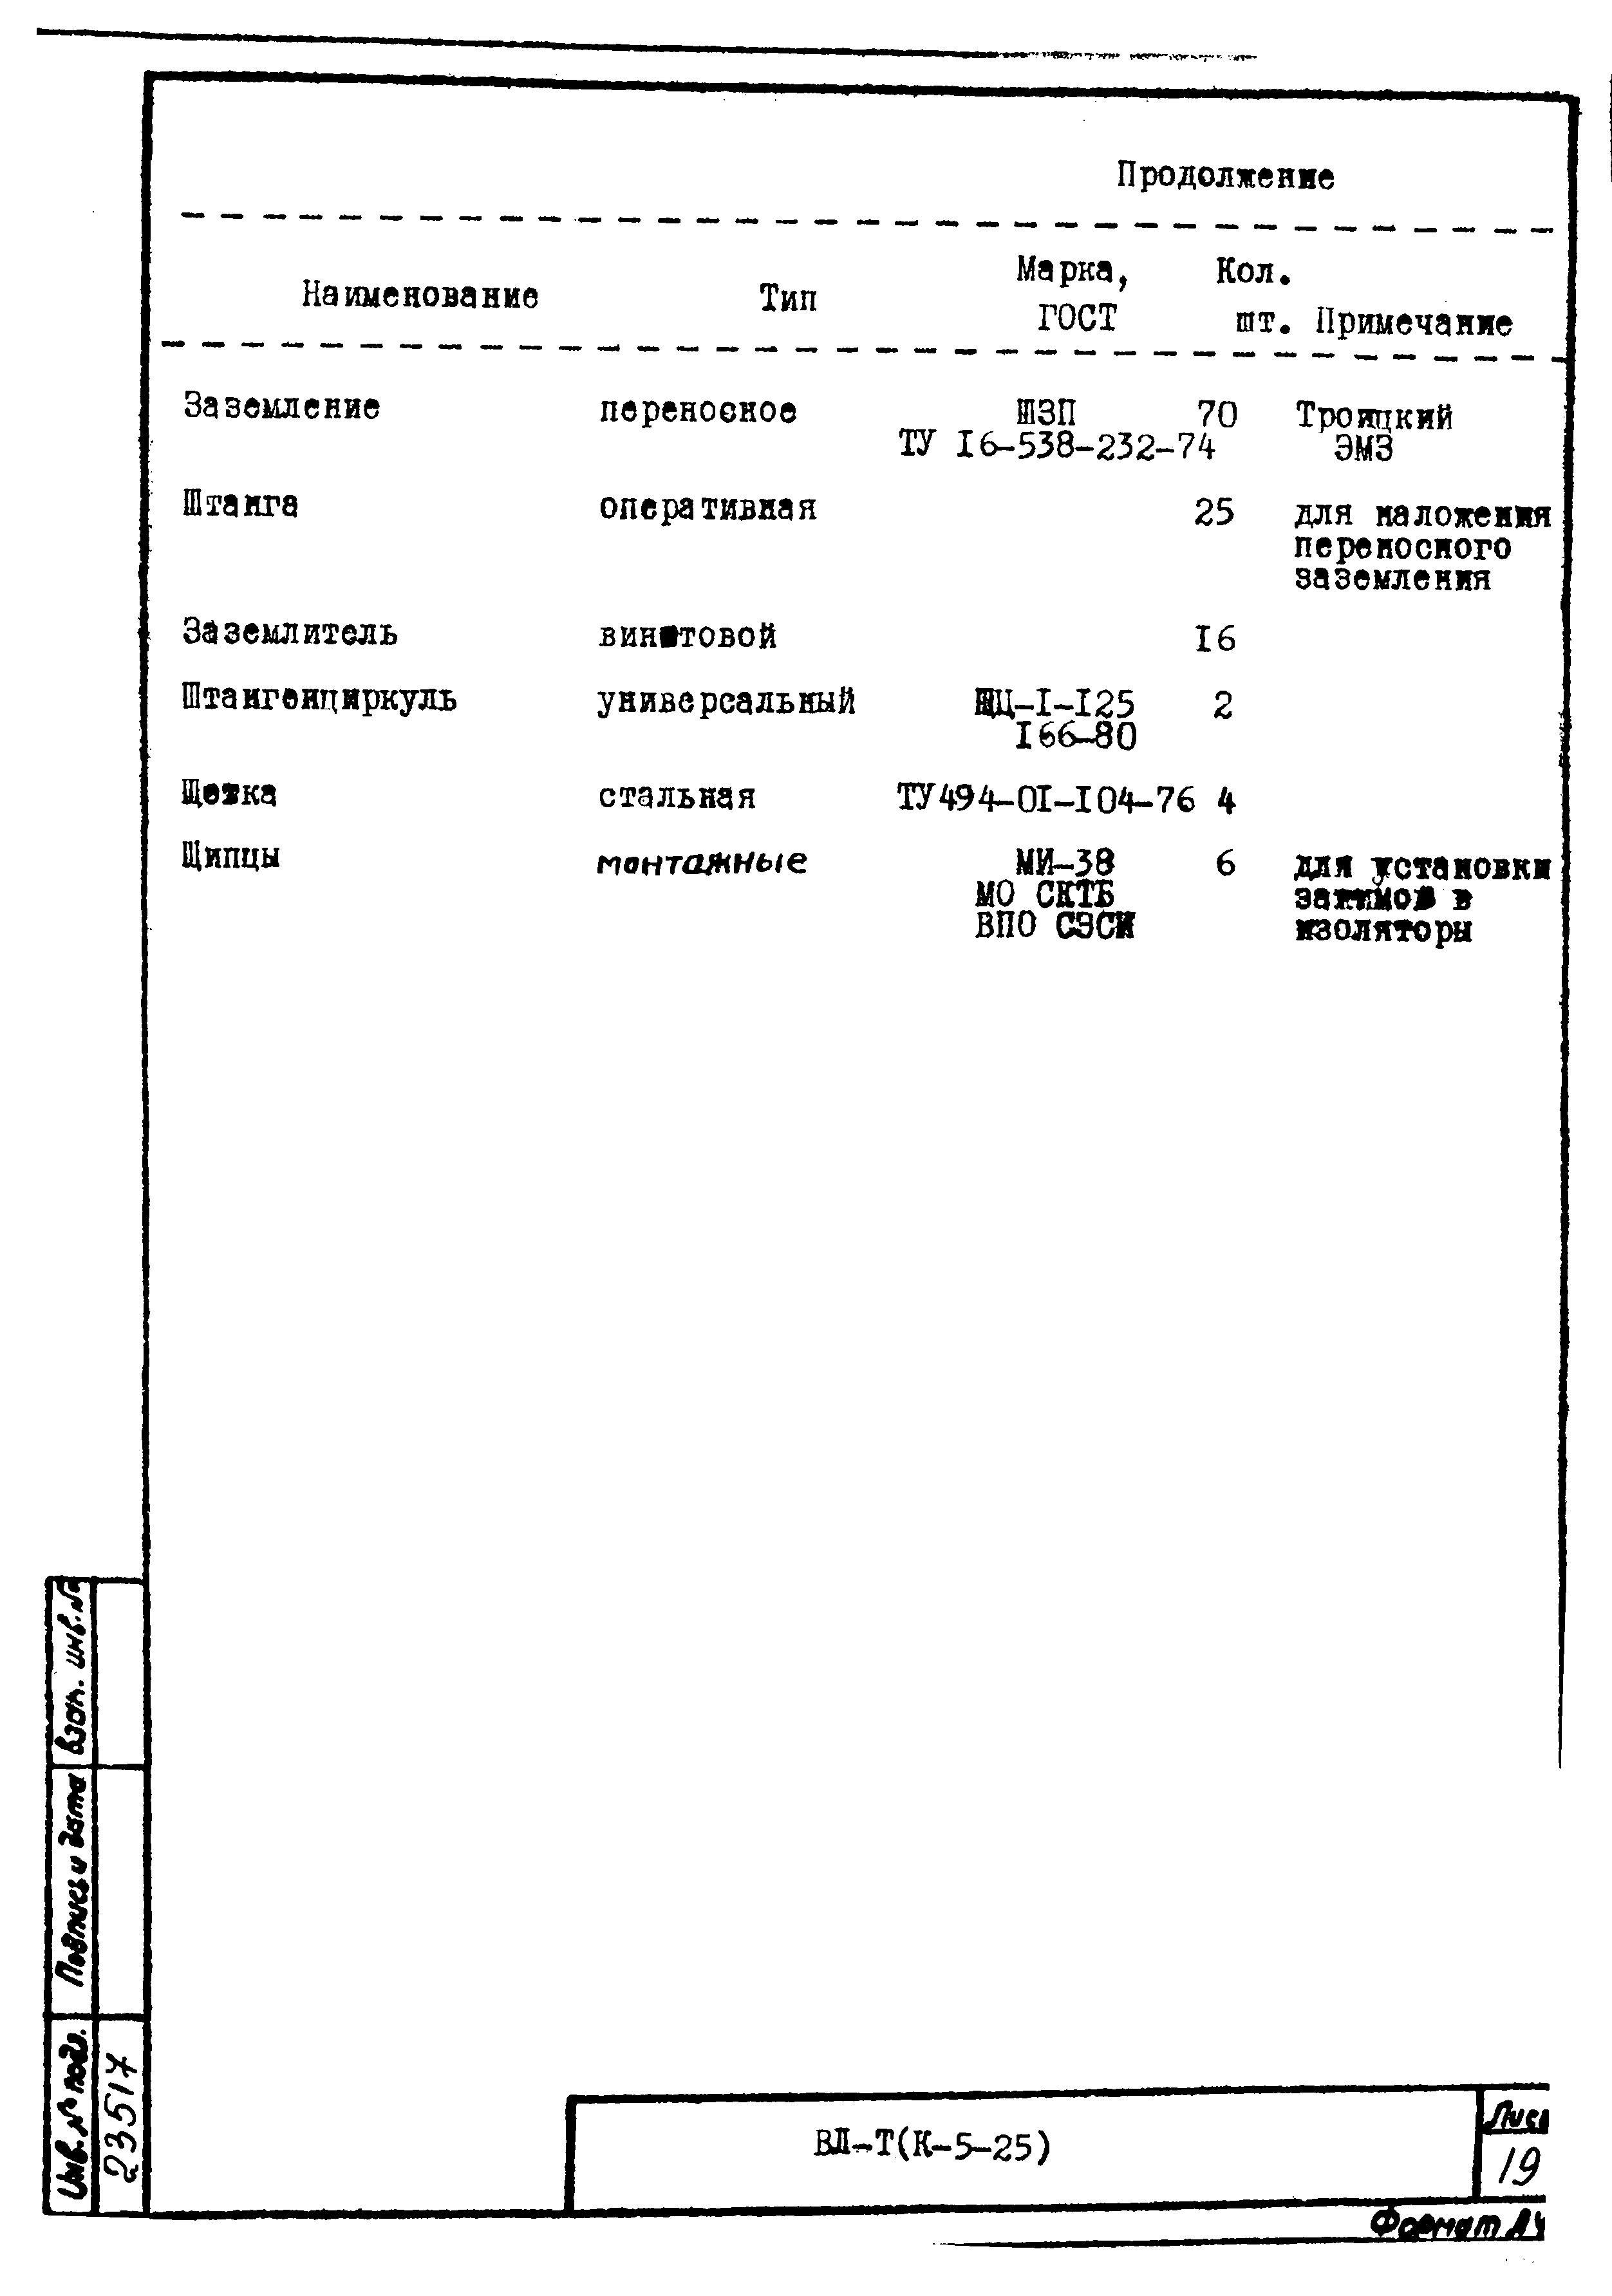 Технологическая карта К-5-25-26